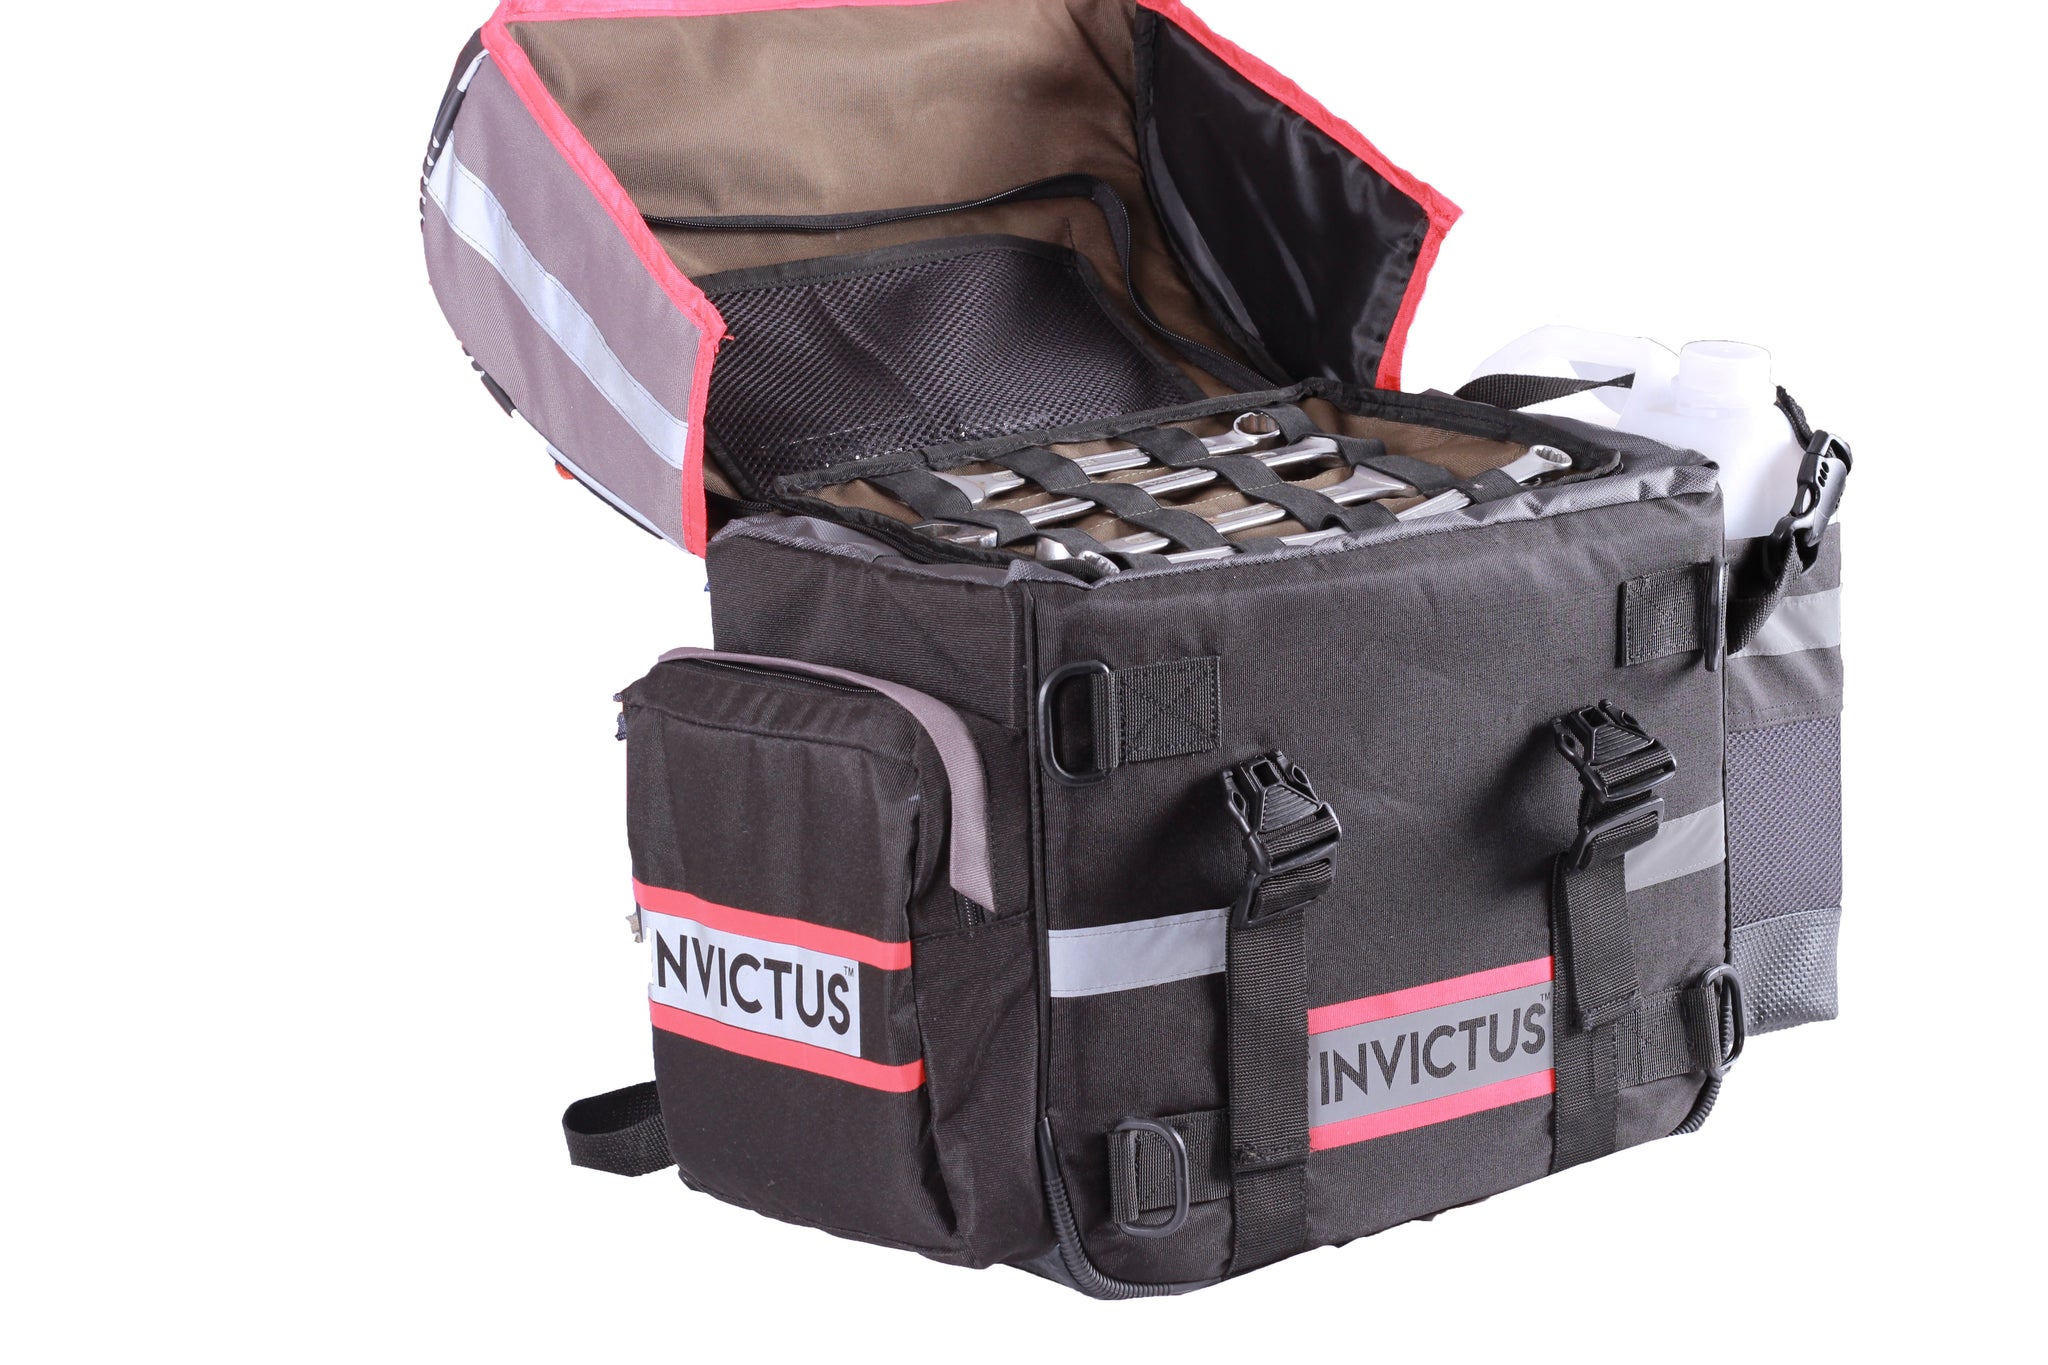 Paco Rabanne Invictus Men Weekender / Duffle Travel Bag in Black Color |  eBay